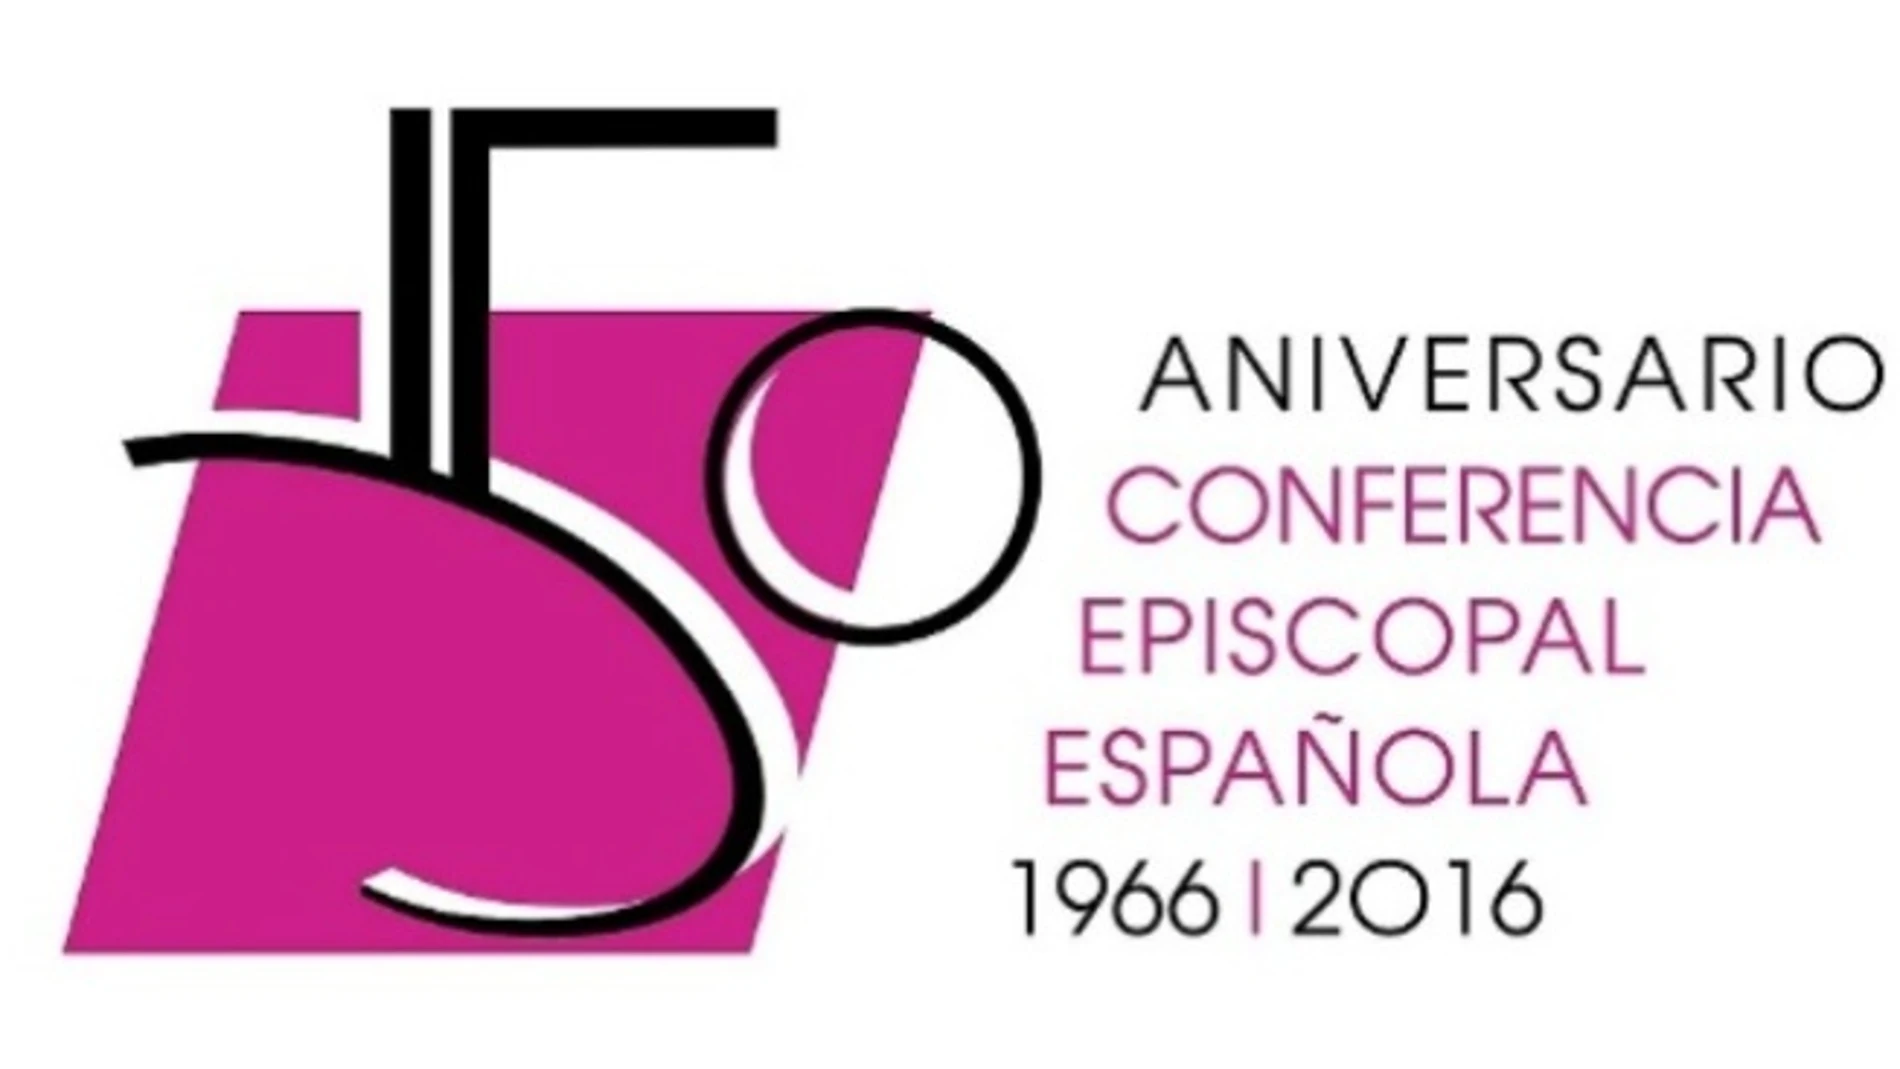 La Conferencia Episcopal lanza un logo conmemorativo de su 50 aniversario